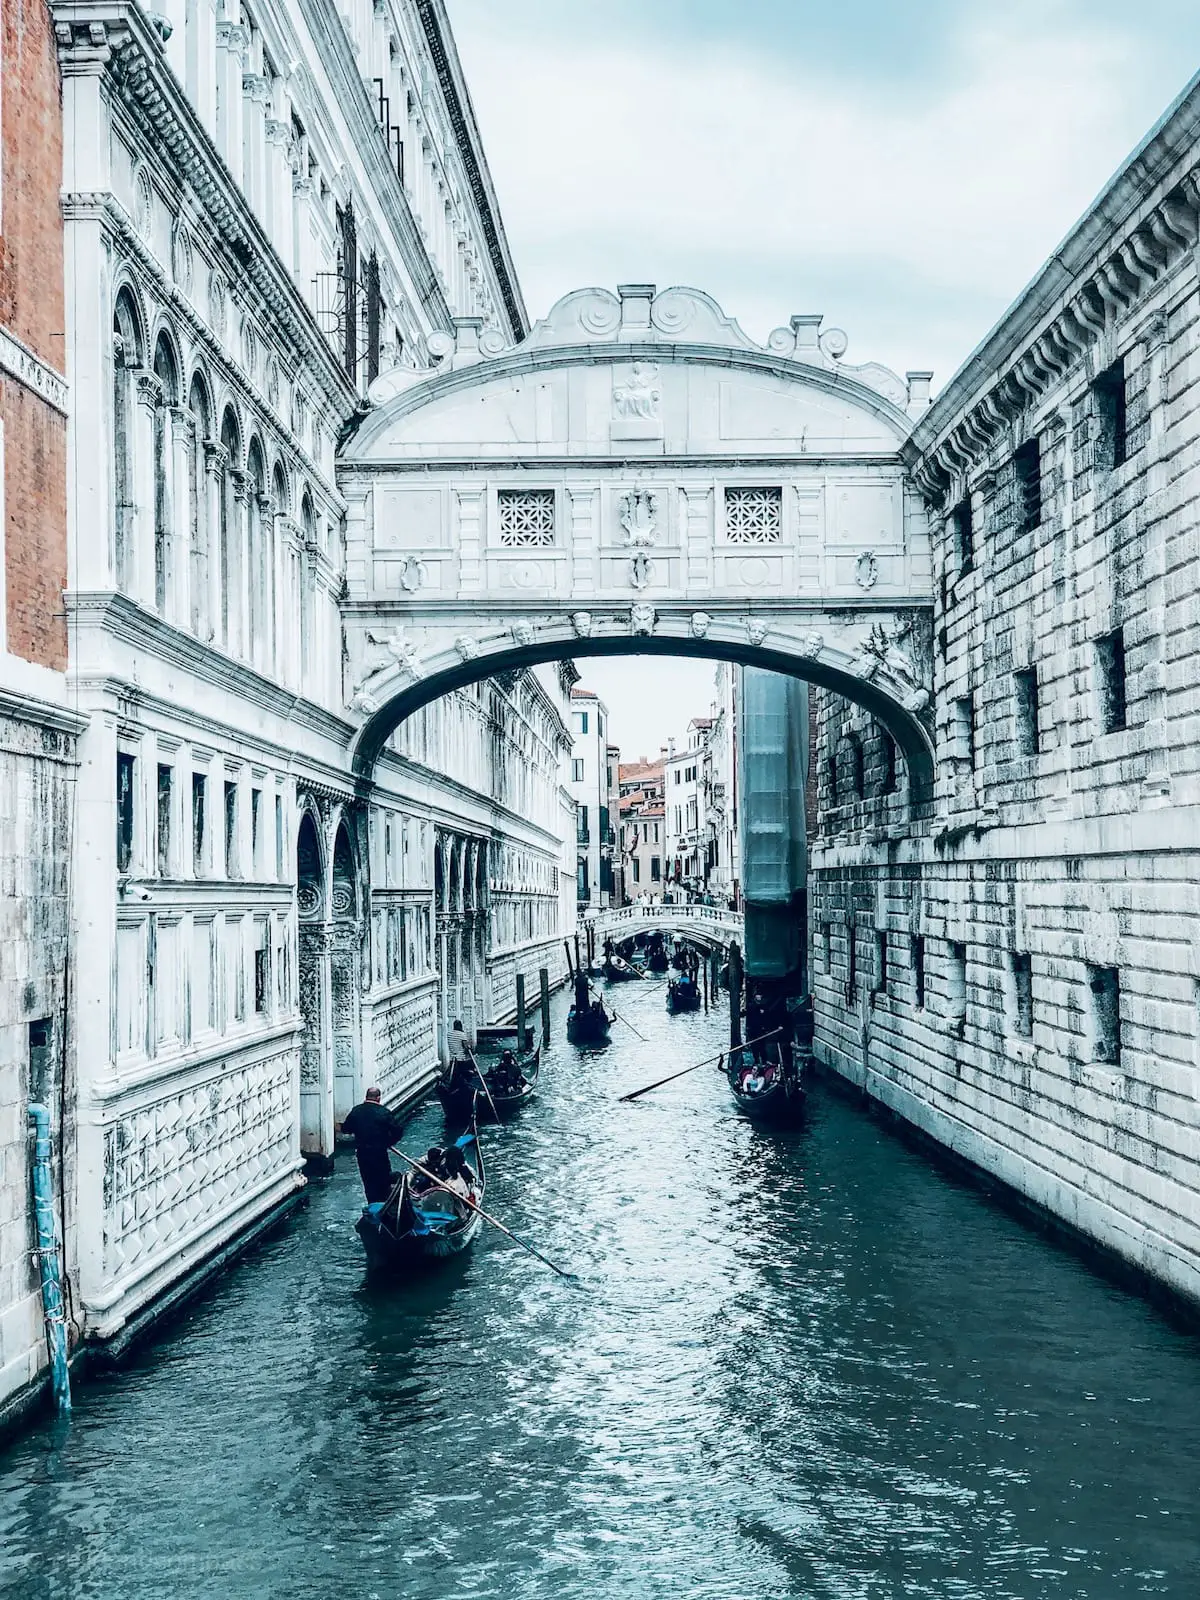 Säufzerbrücke in Venedig.